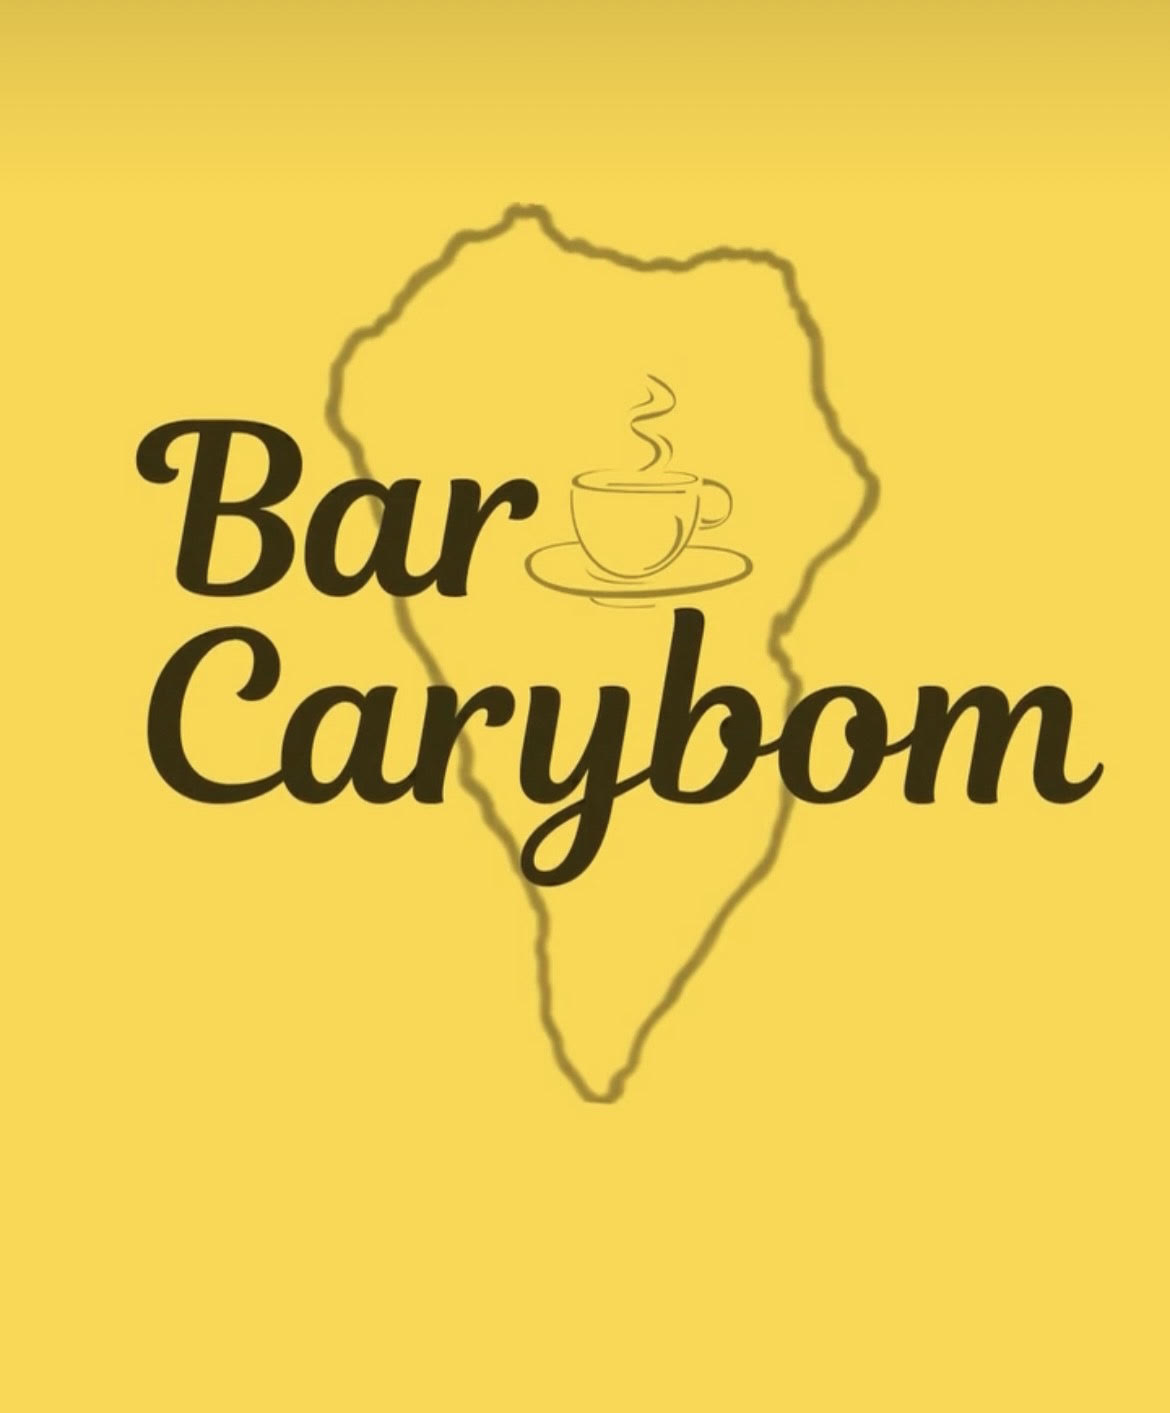 BAR CAFETERIA CARyBOM